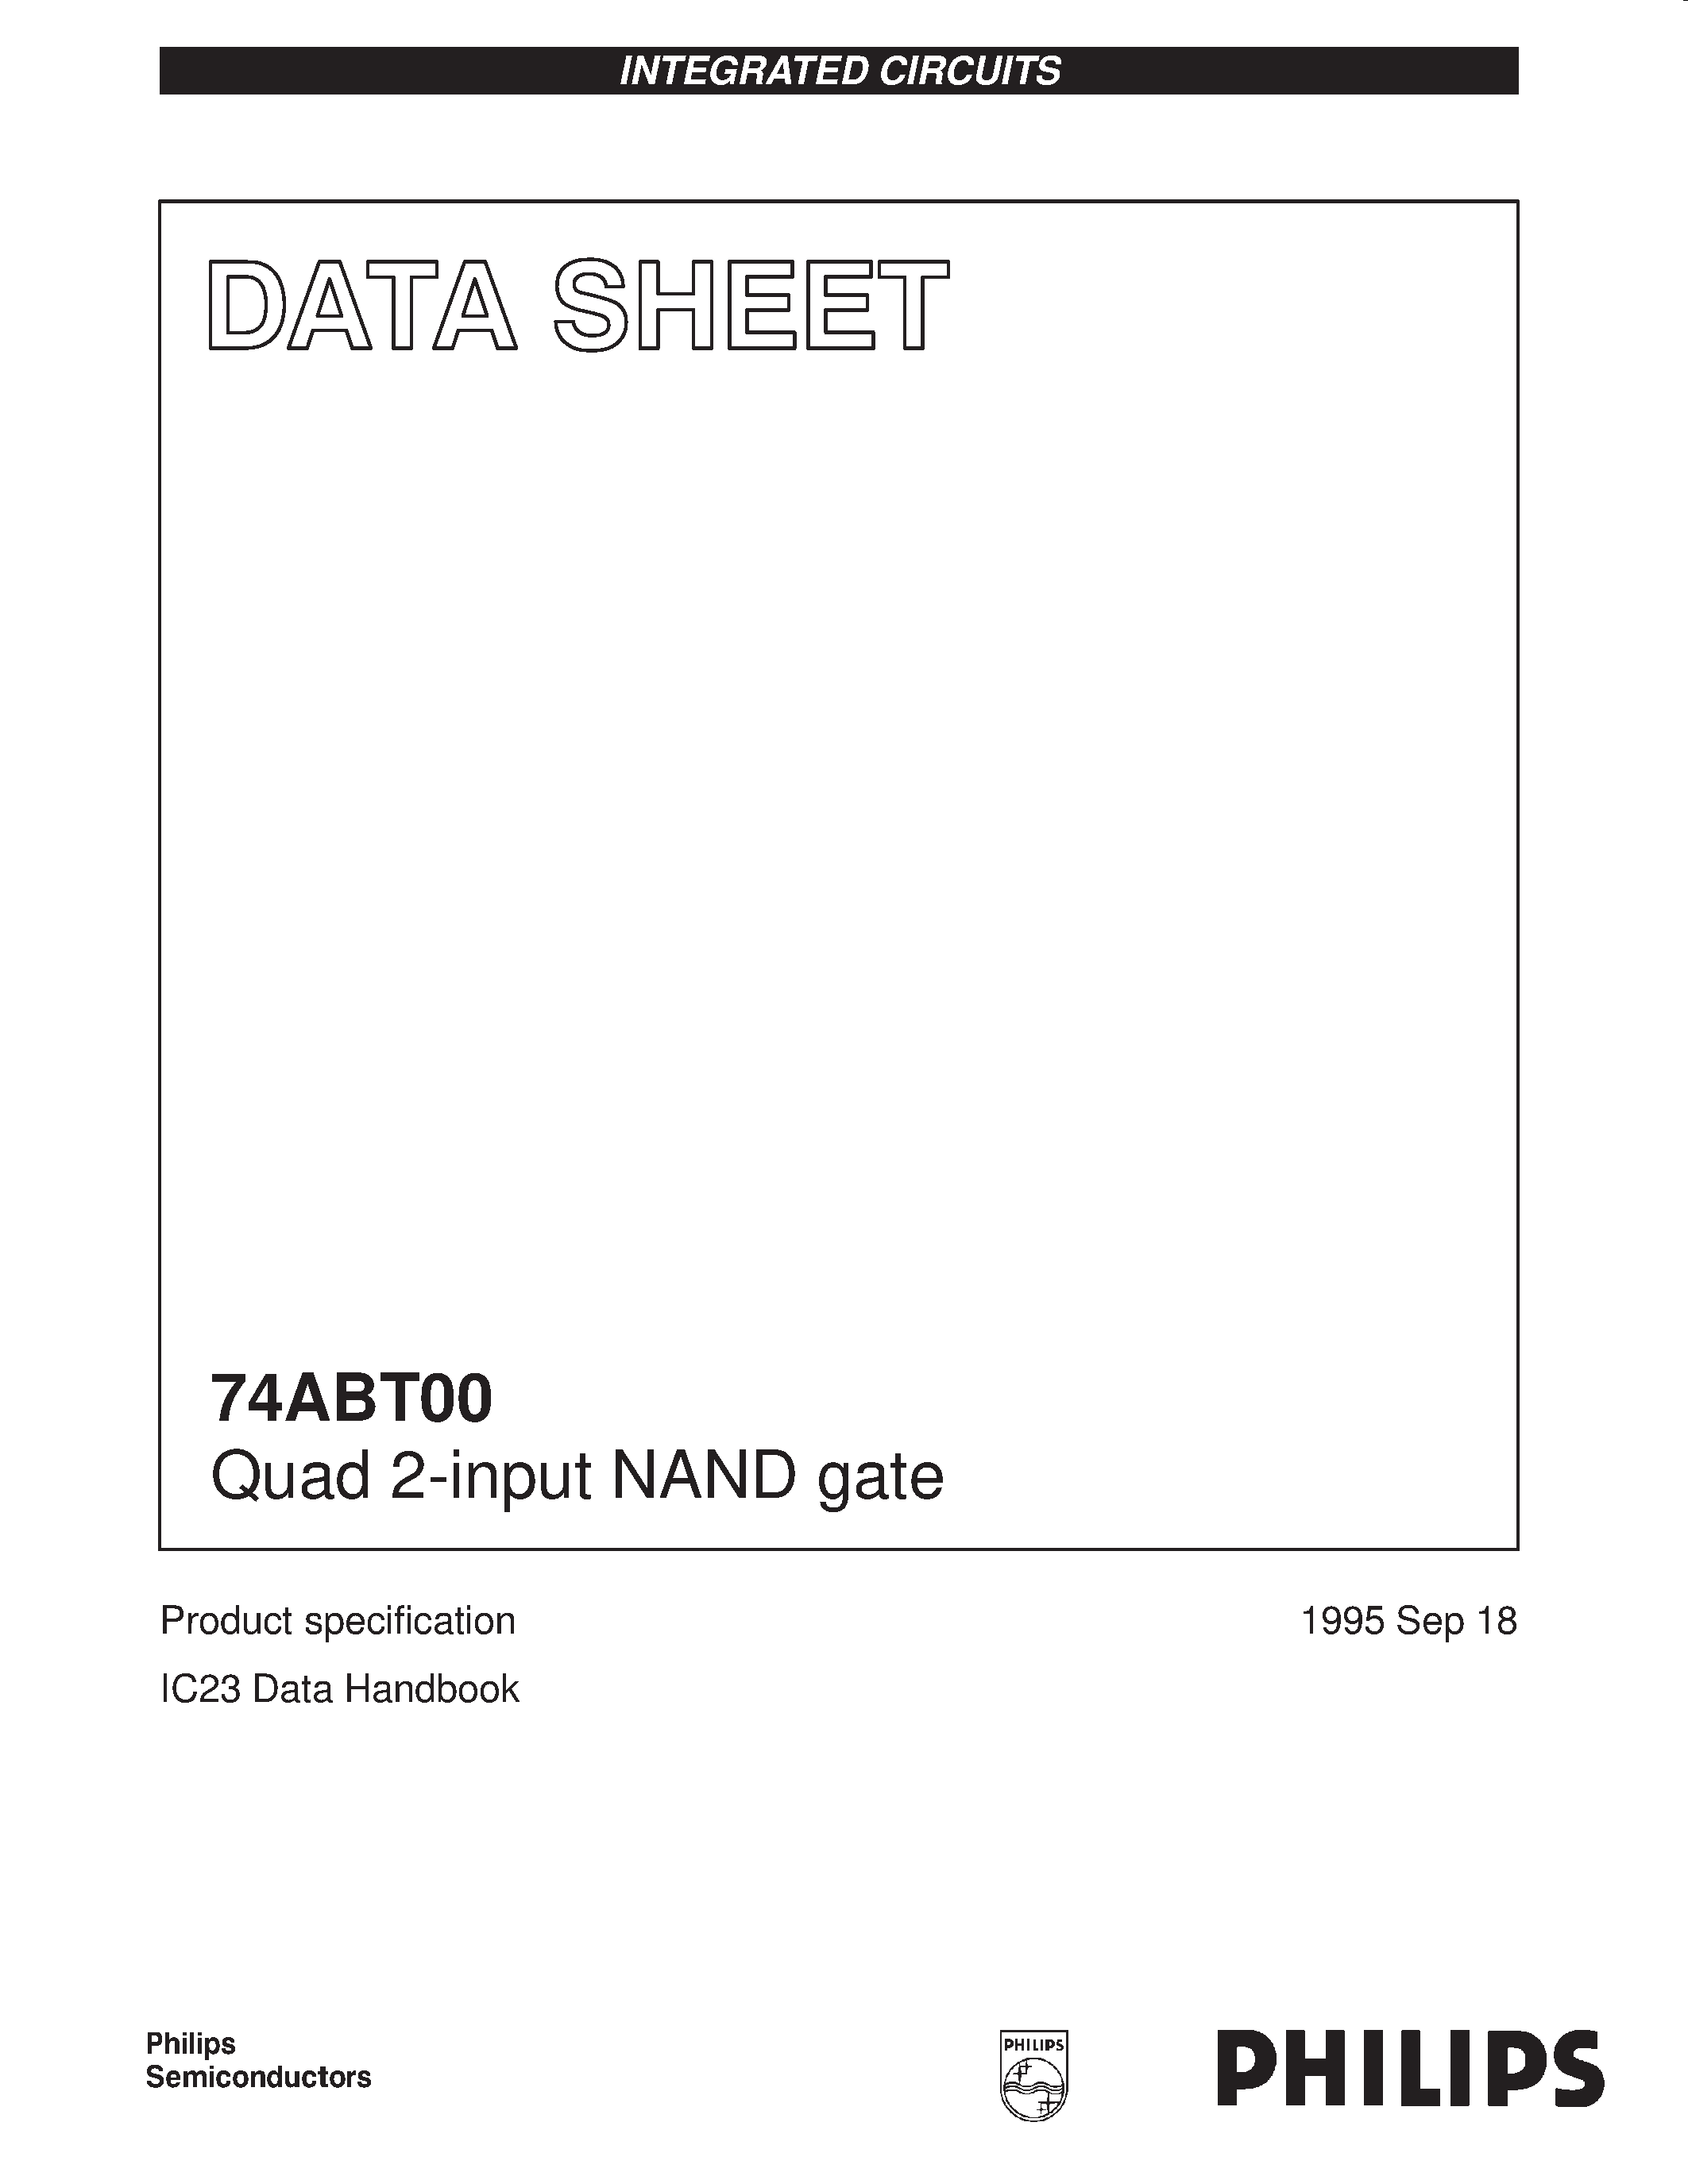 Даташит 74ABT00 - Quad 2-input NAND gate страница 1